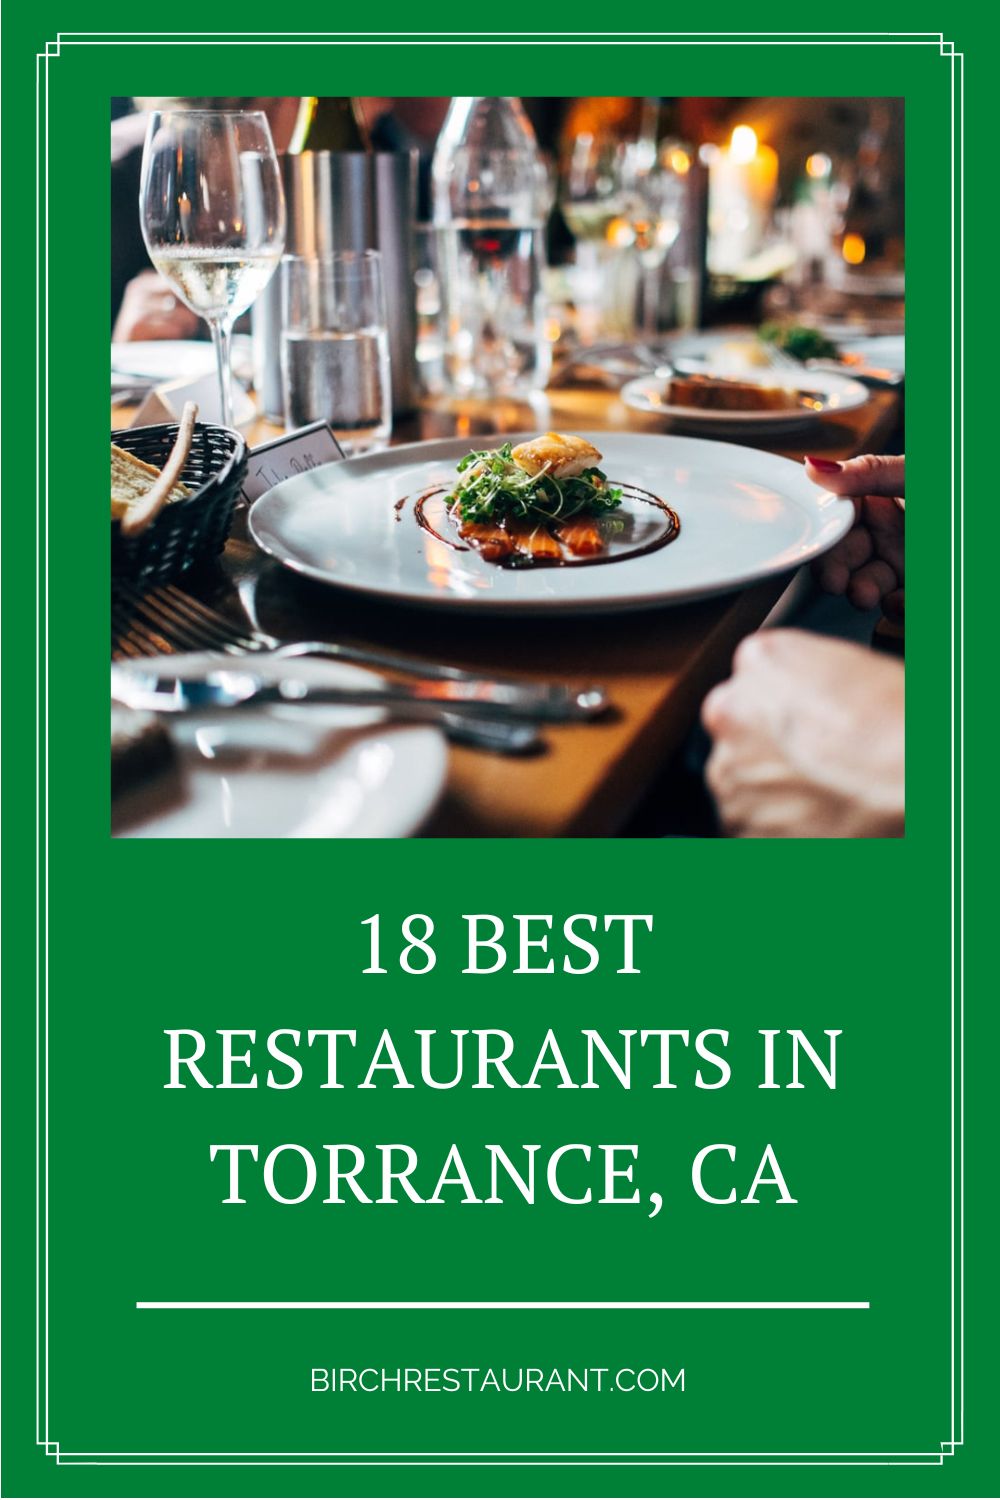 Best Restaurants in Torrance